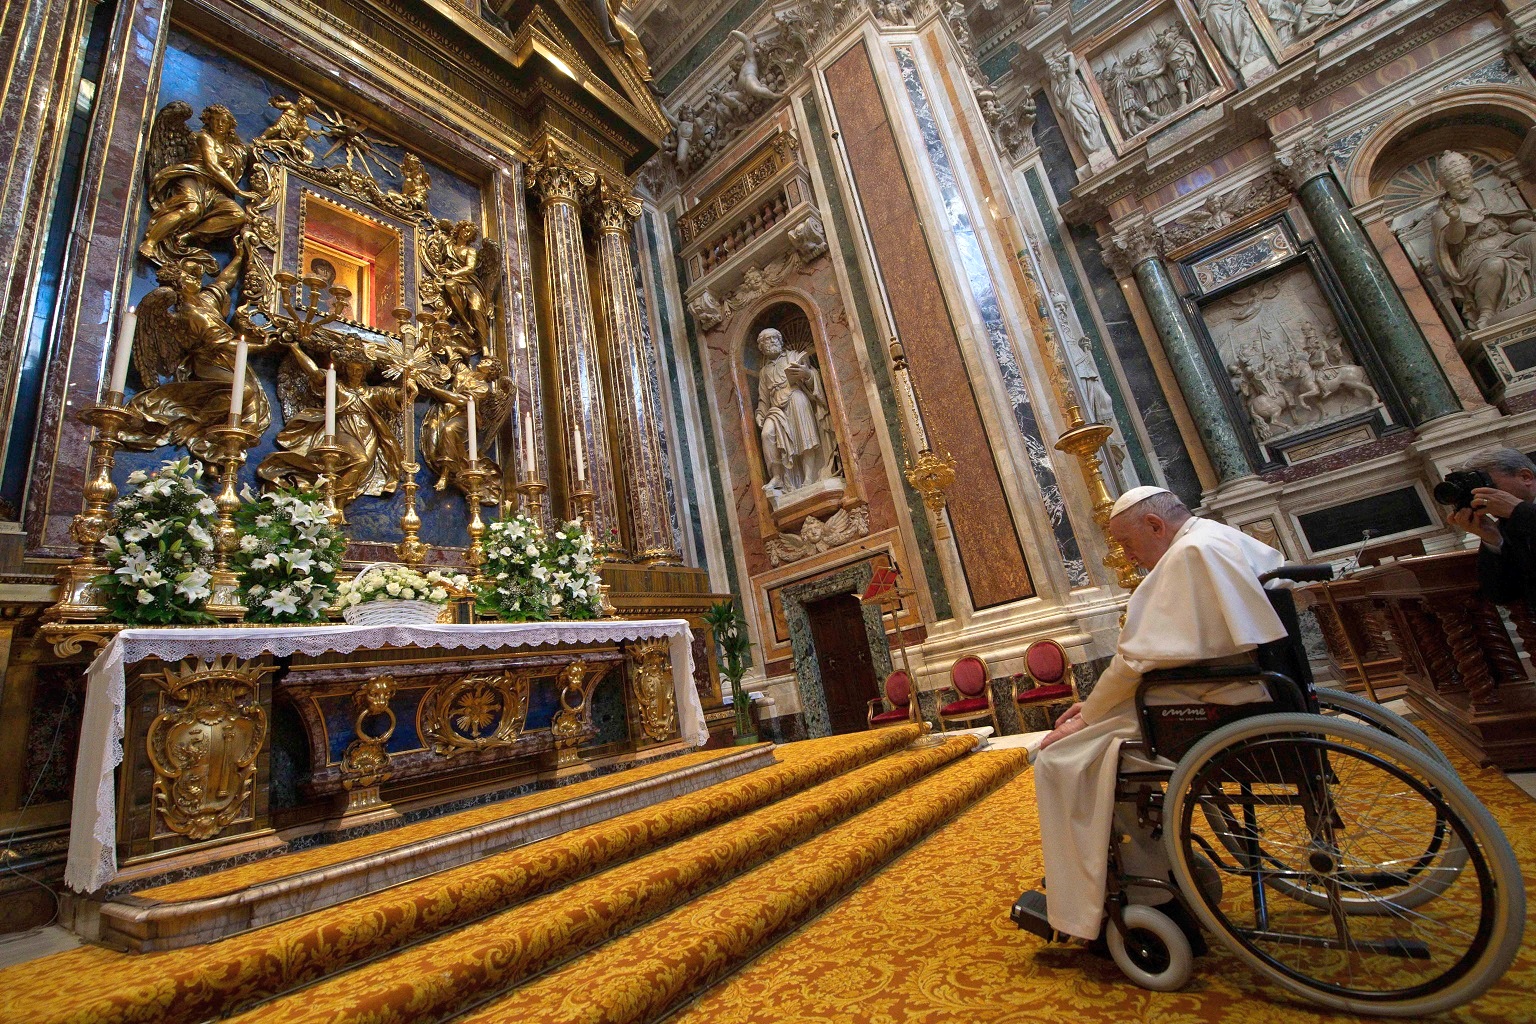 Визит в Бахрейн. Папа в 100-й раз помолился перед иконой Богородицы в Санта-Мария-Маджоре